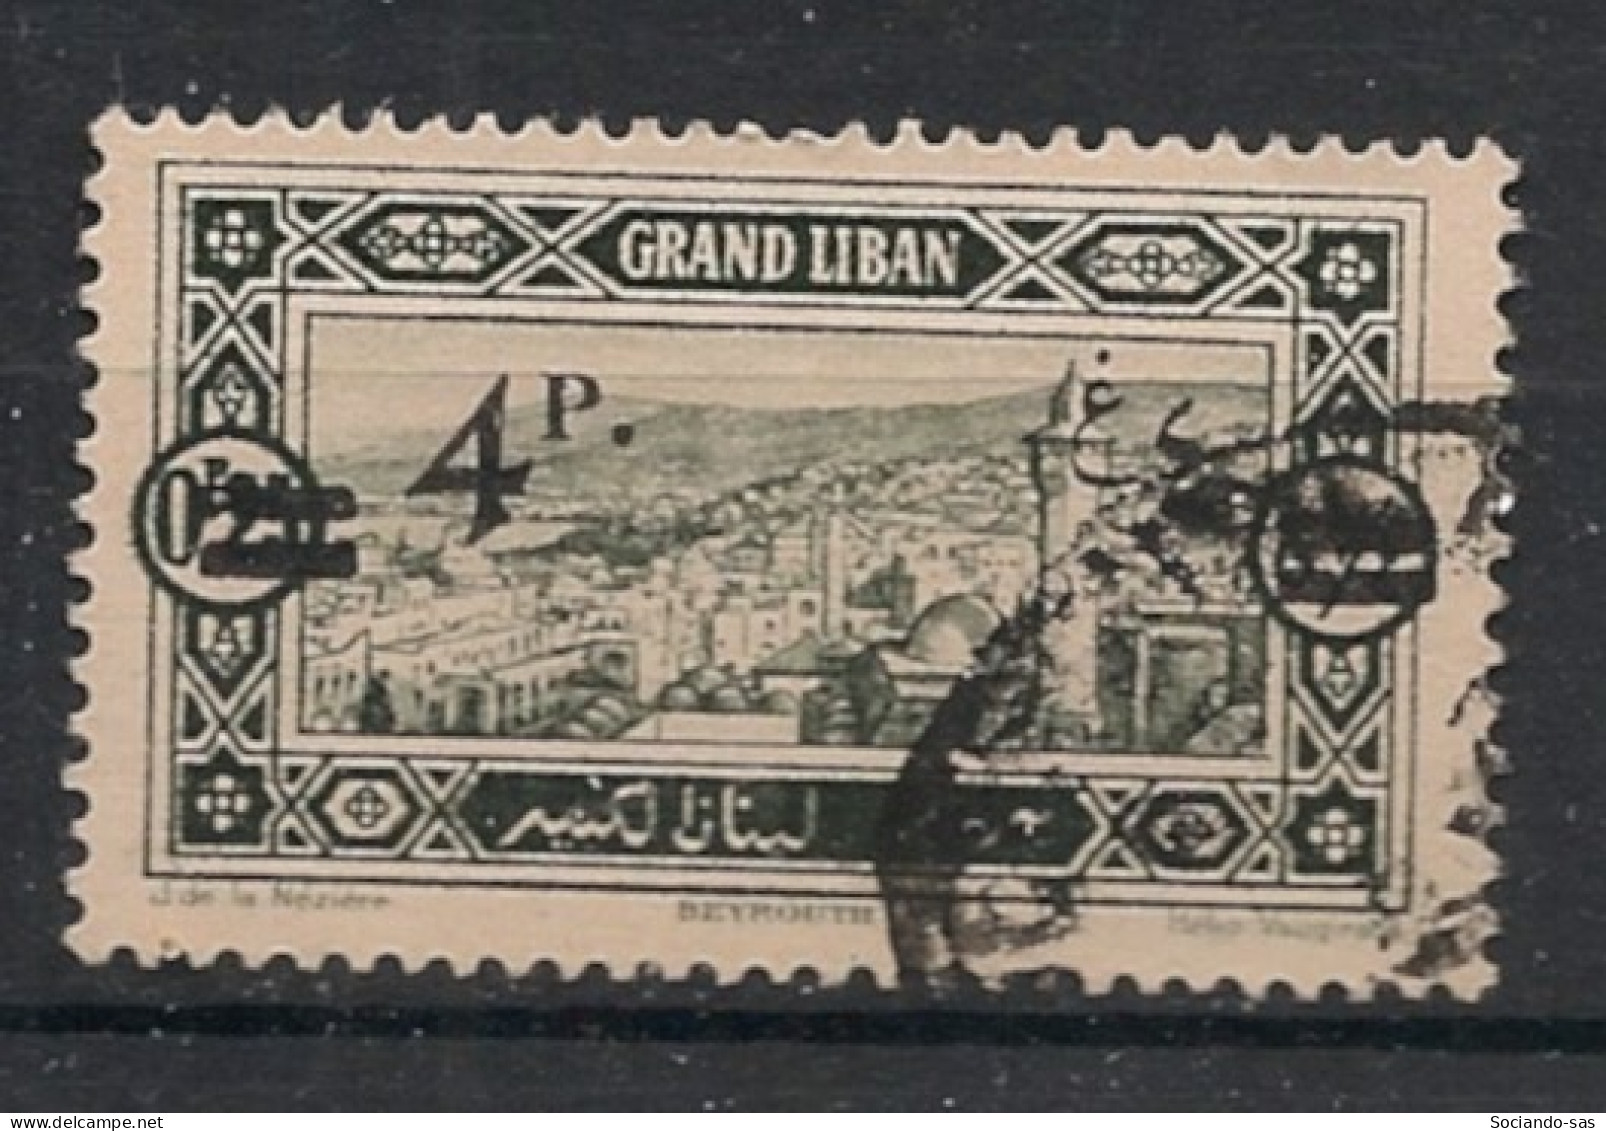 GRAND LIBAN - 1926 - N°YT. 76 - 4pi Sur 0pi25 Vert-noir - Oblitéré / Used - Used Stamps